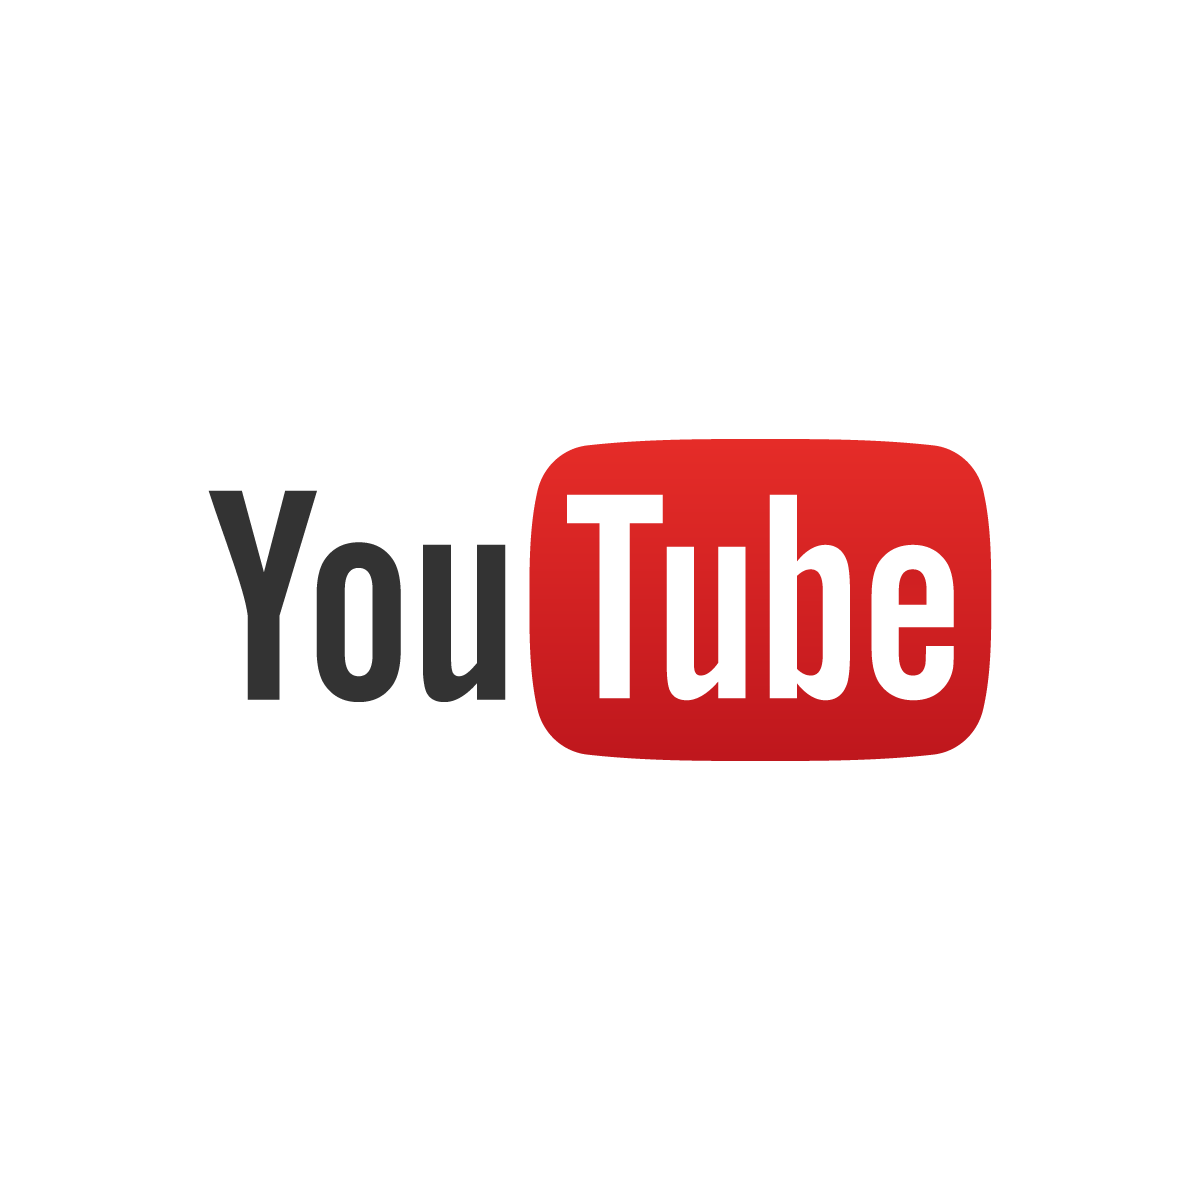 YouTube Broadcast Logo - YouTube